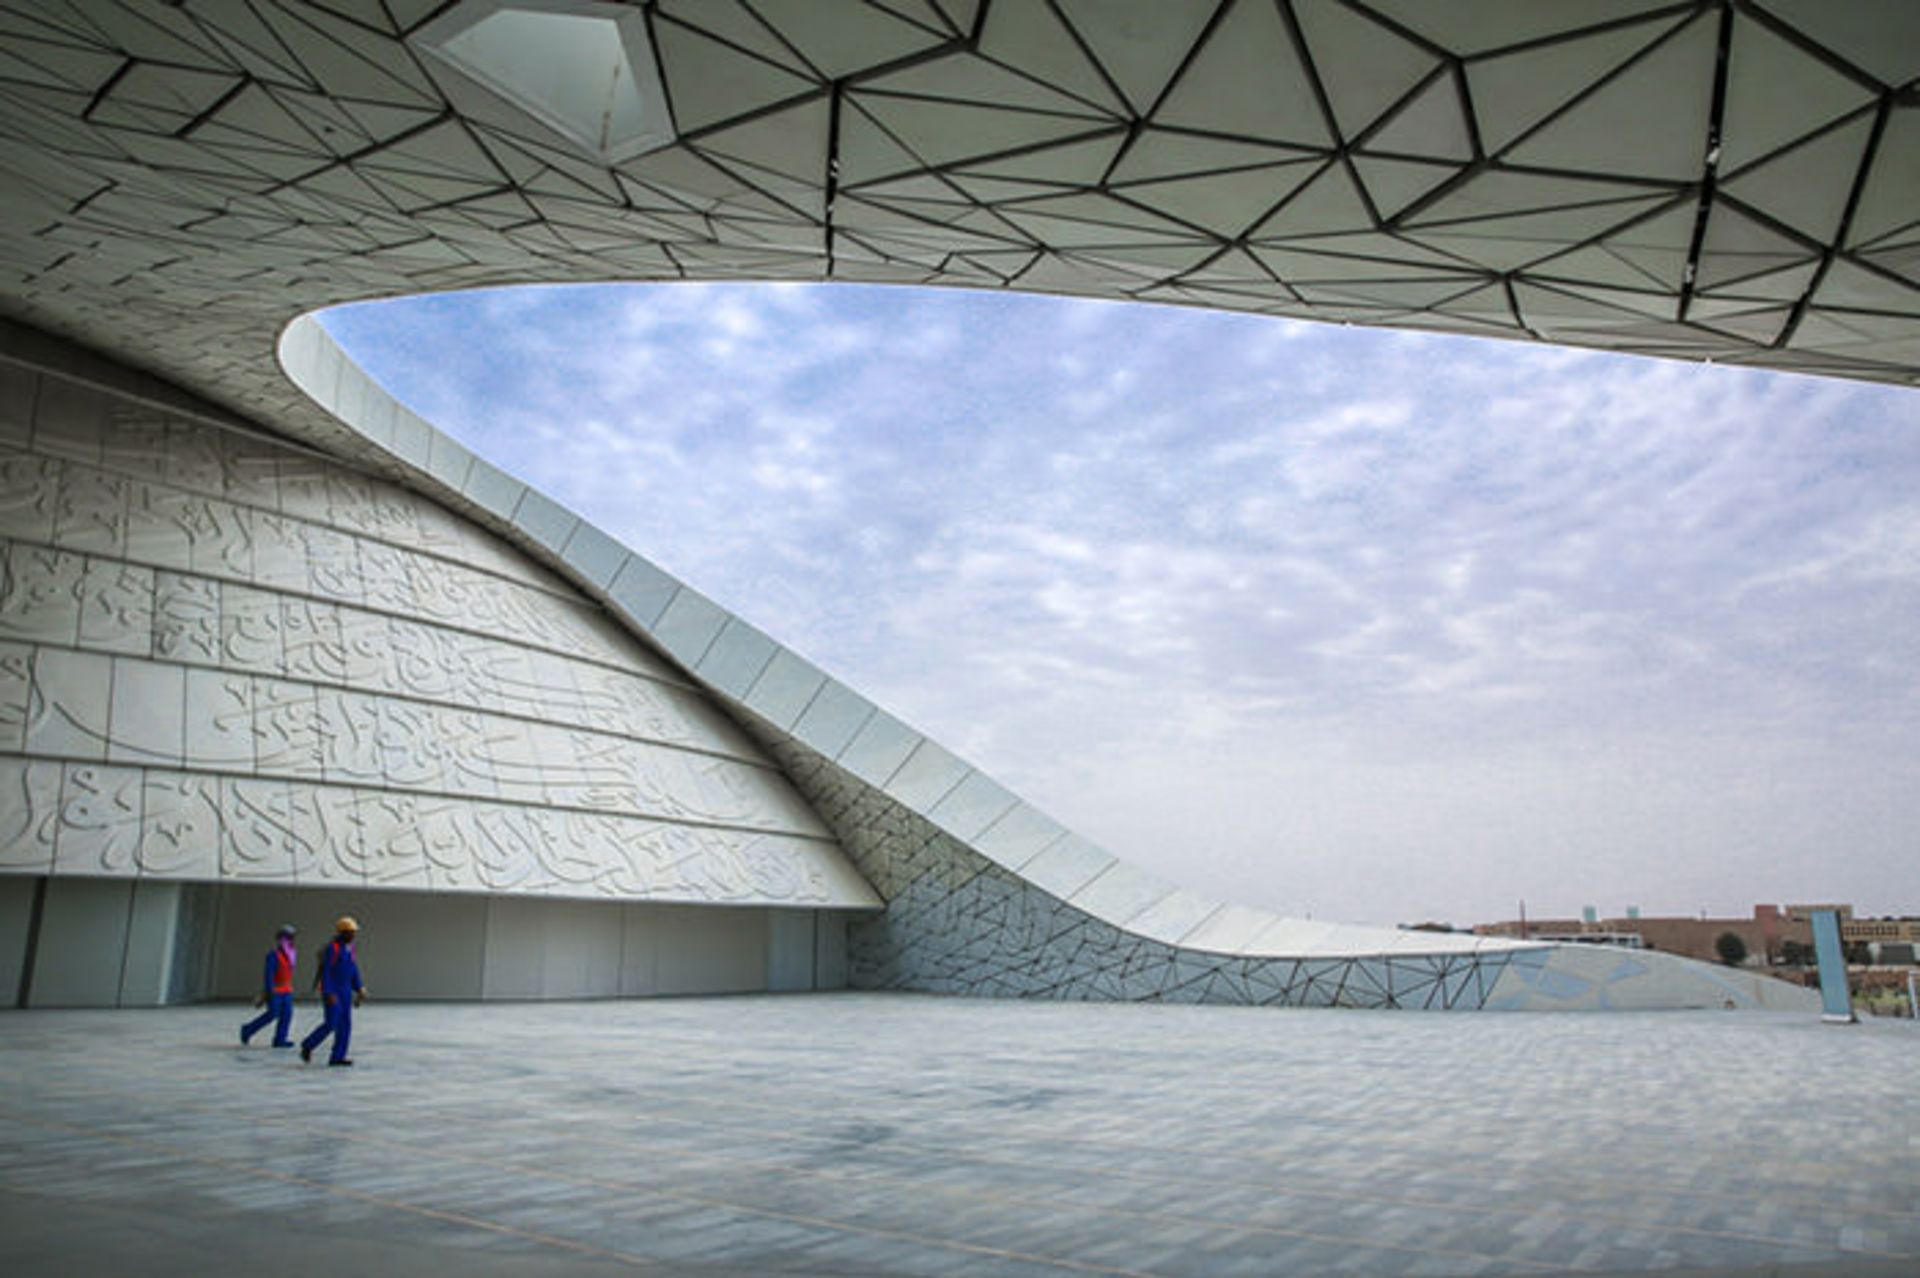 نگاهی به معماری متفاوت مسجد دانشگاه مطالعات اسلامی در قطر